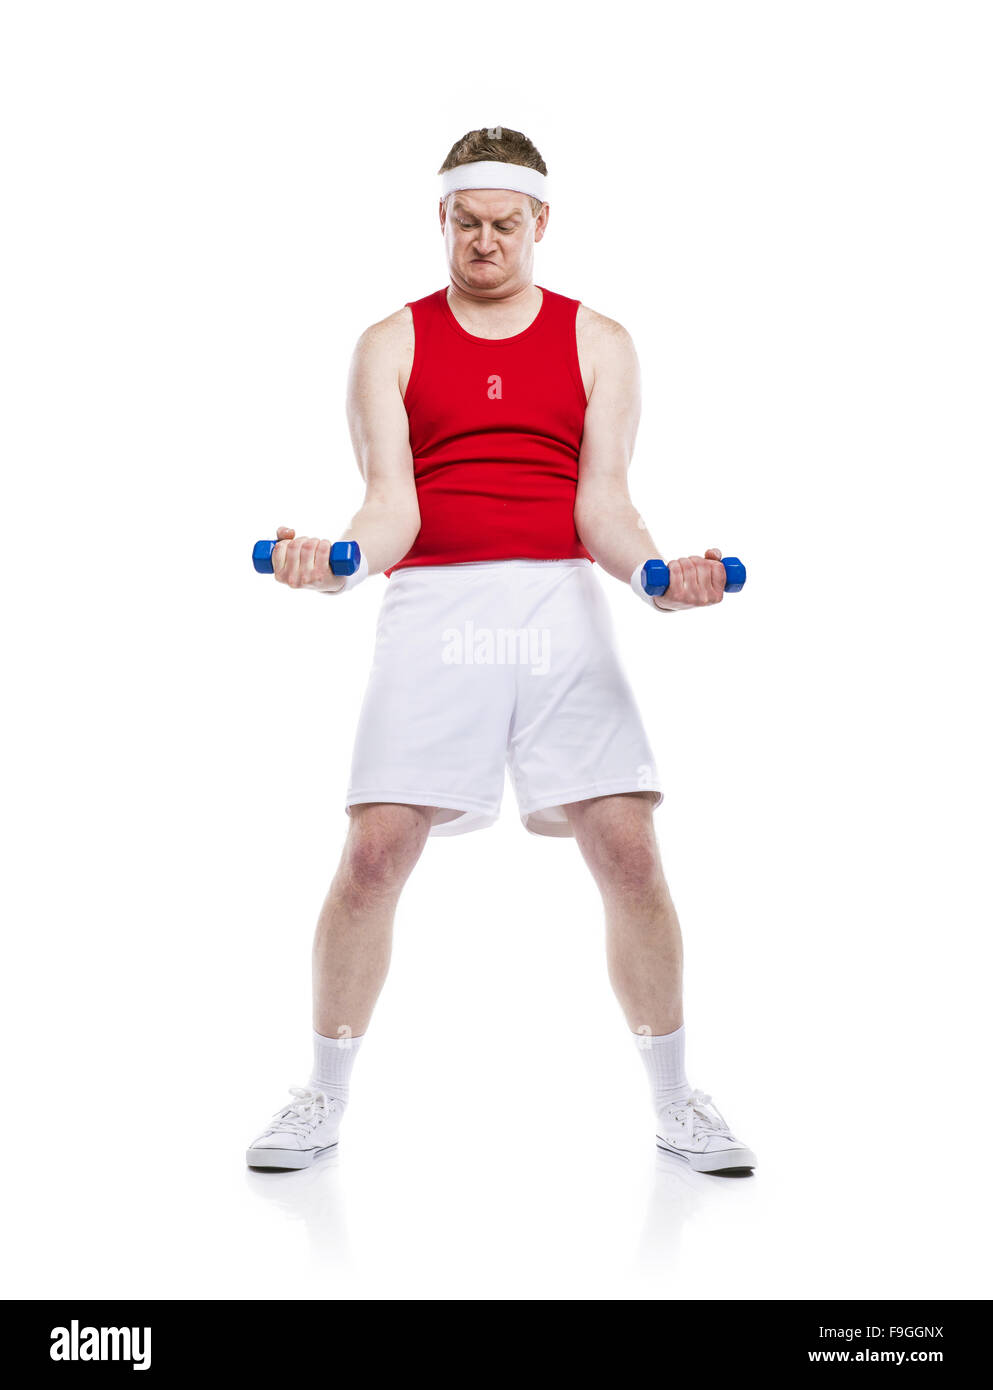 Lustige schwach Bodybuilder versucht, eine Gewicht zu heben. Studio auf weißem Hintergrund gedreht. Stockfoto